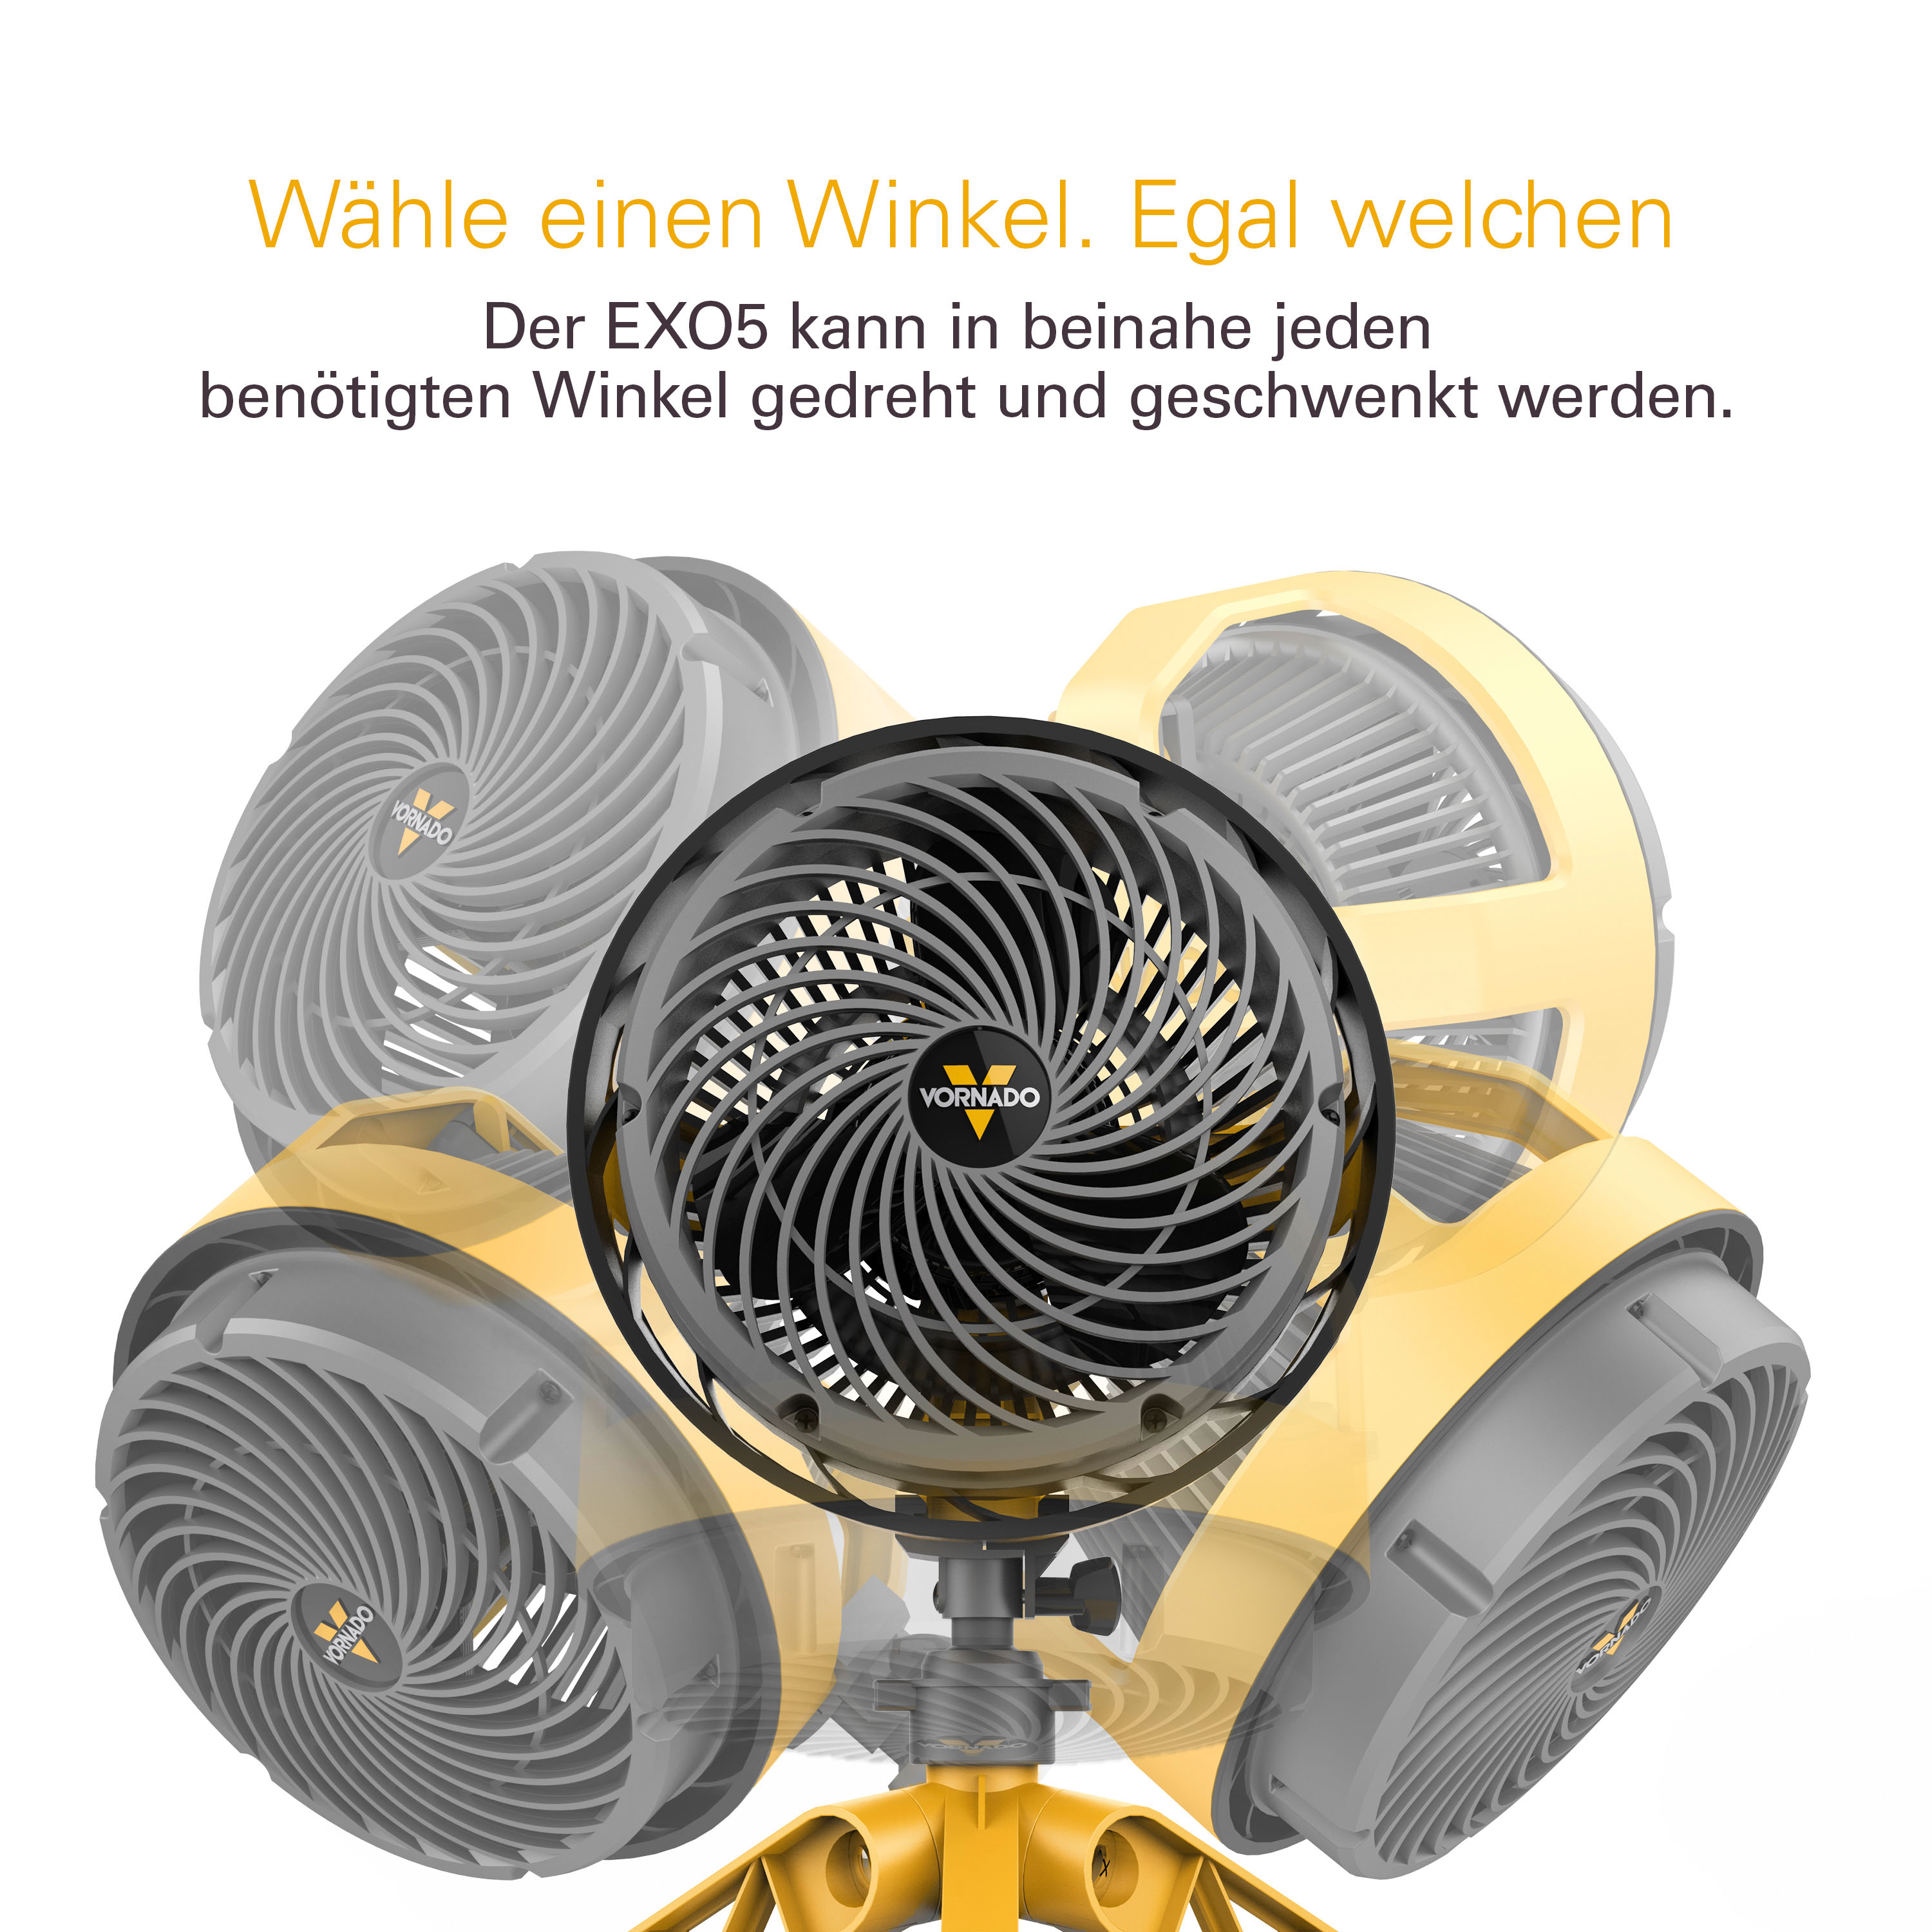 Vornado EXO5 - Ventilator für Baustelle und Werkstatt - inkl. Montagehalterung